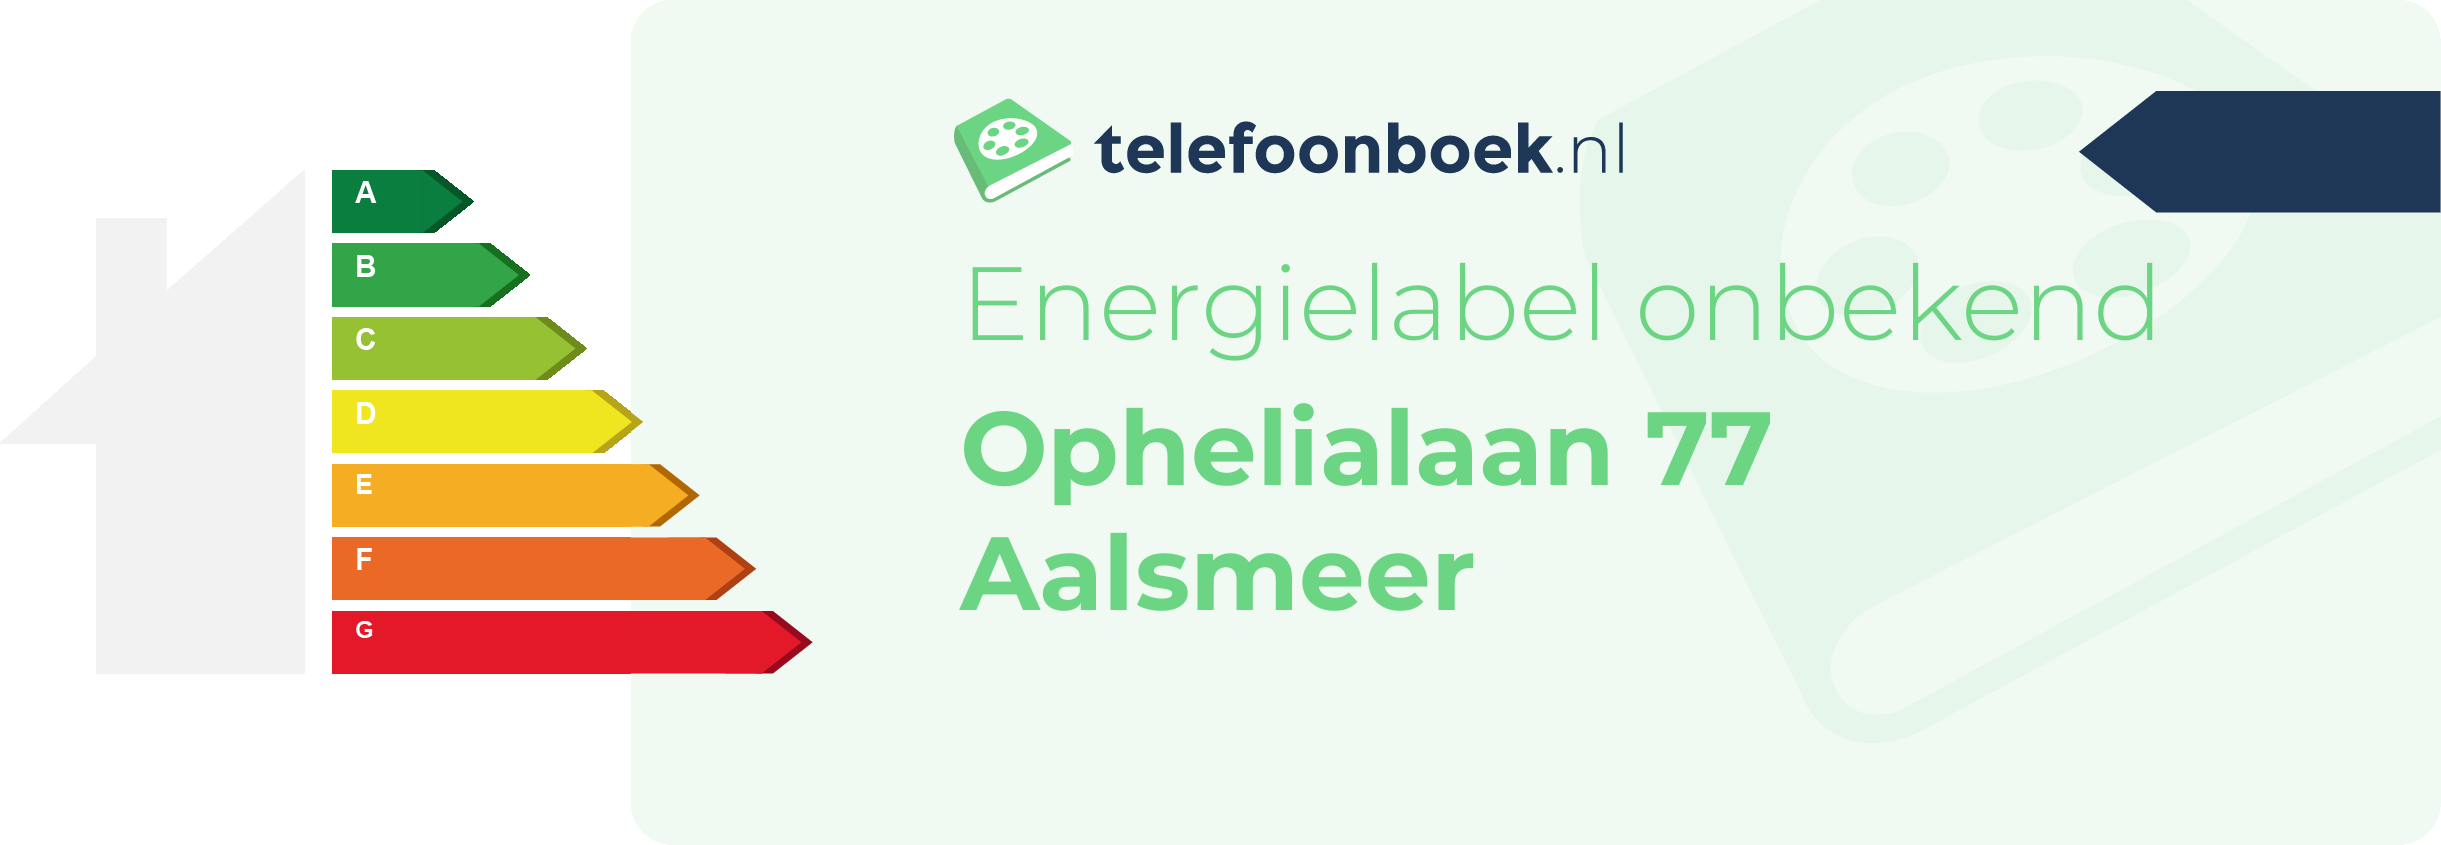 Energielabel Ophelialaan 77 Aalsmeer